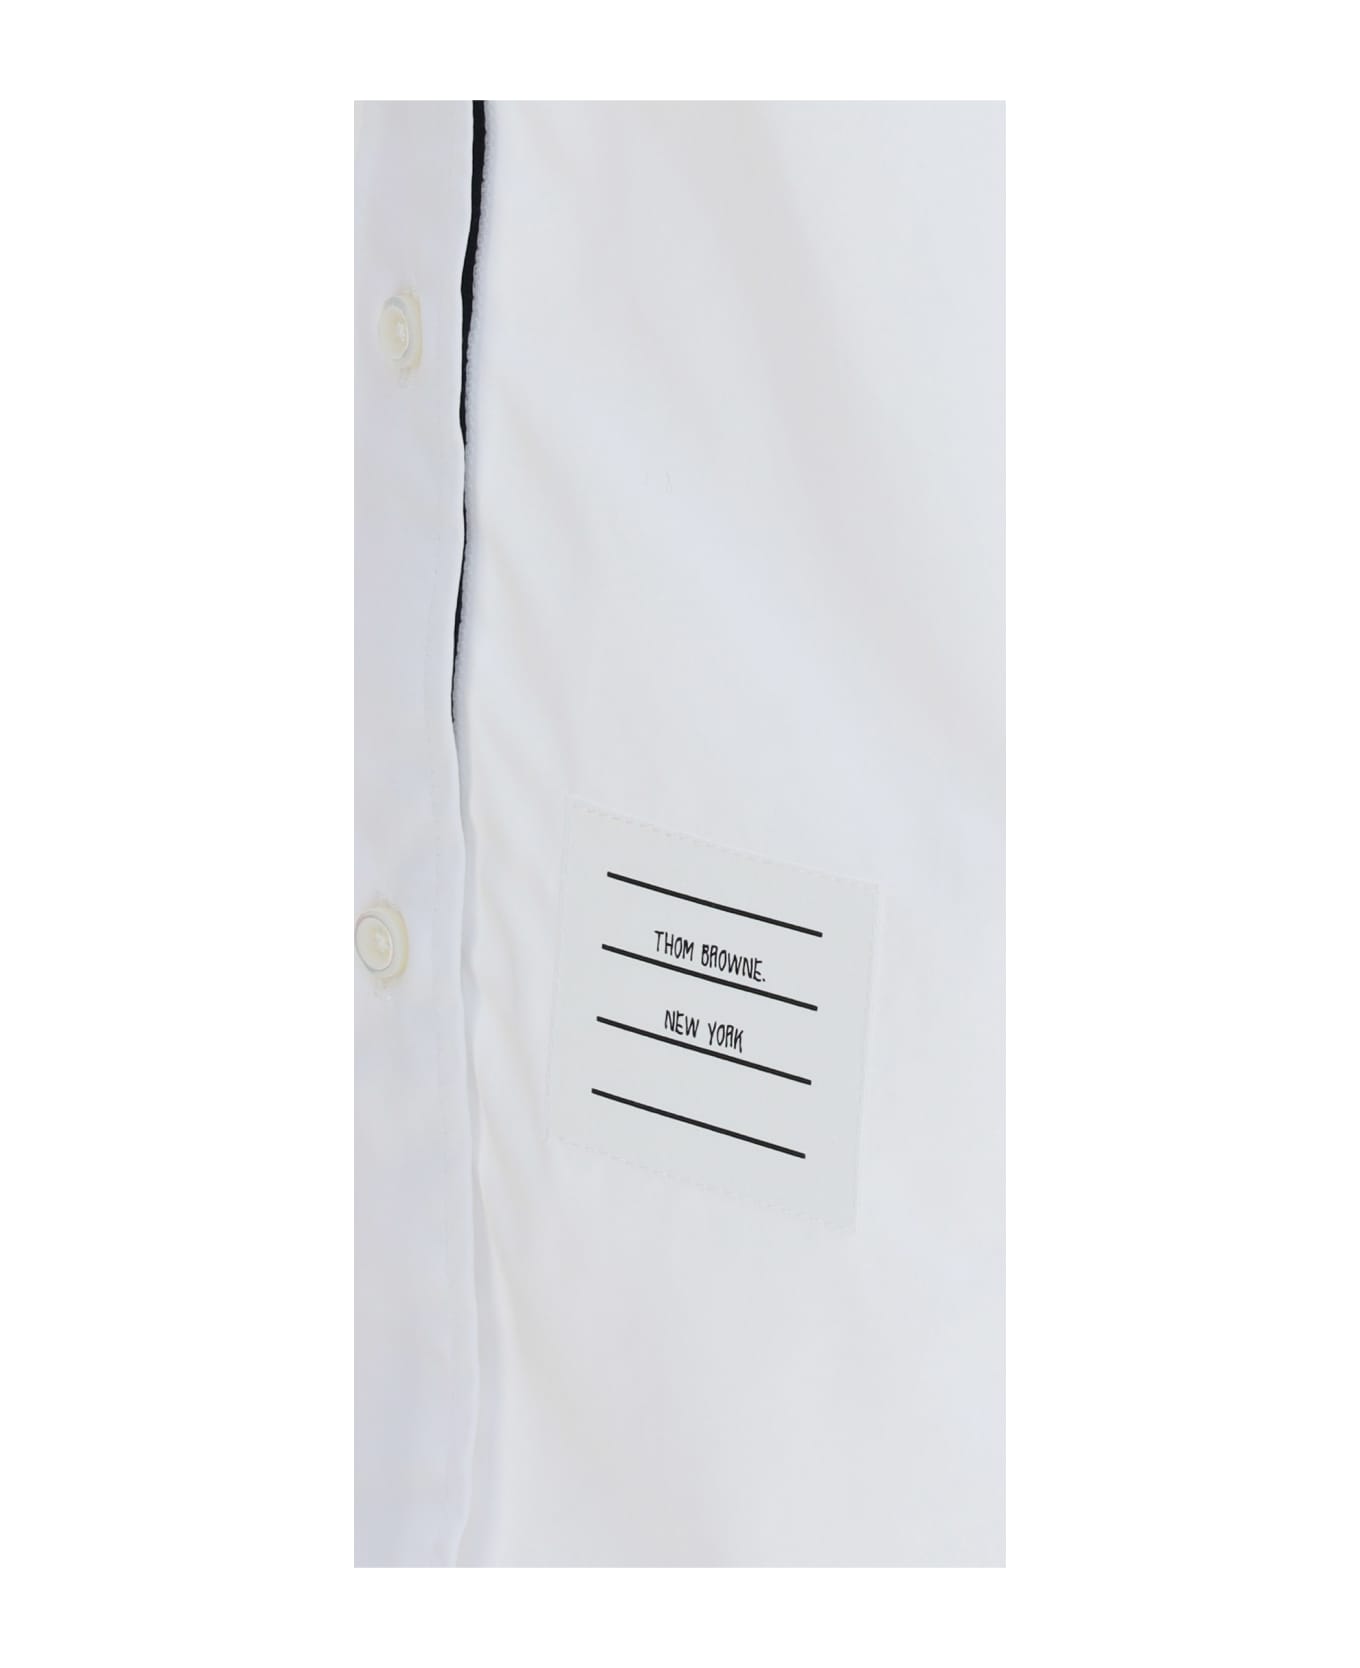 Thom Browne Shirt - White